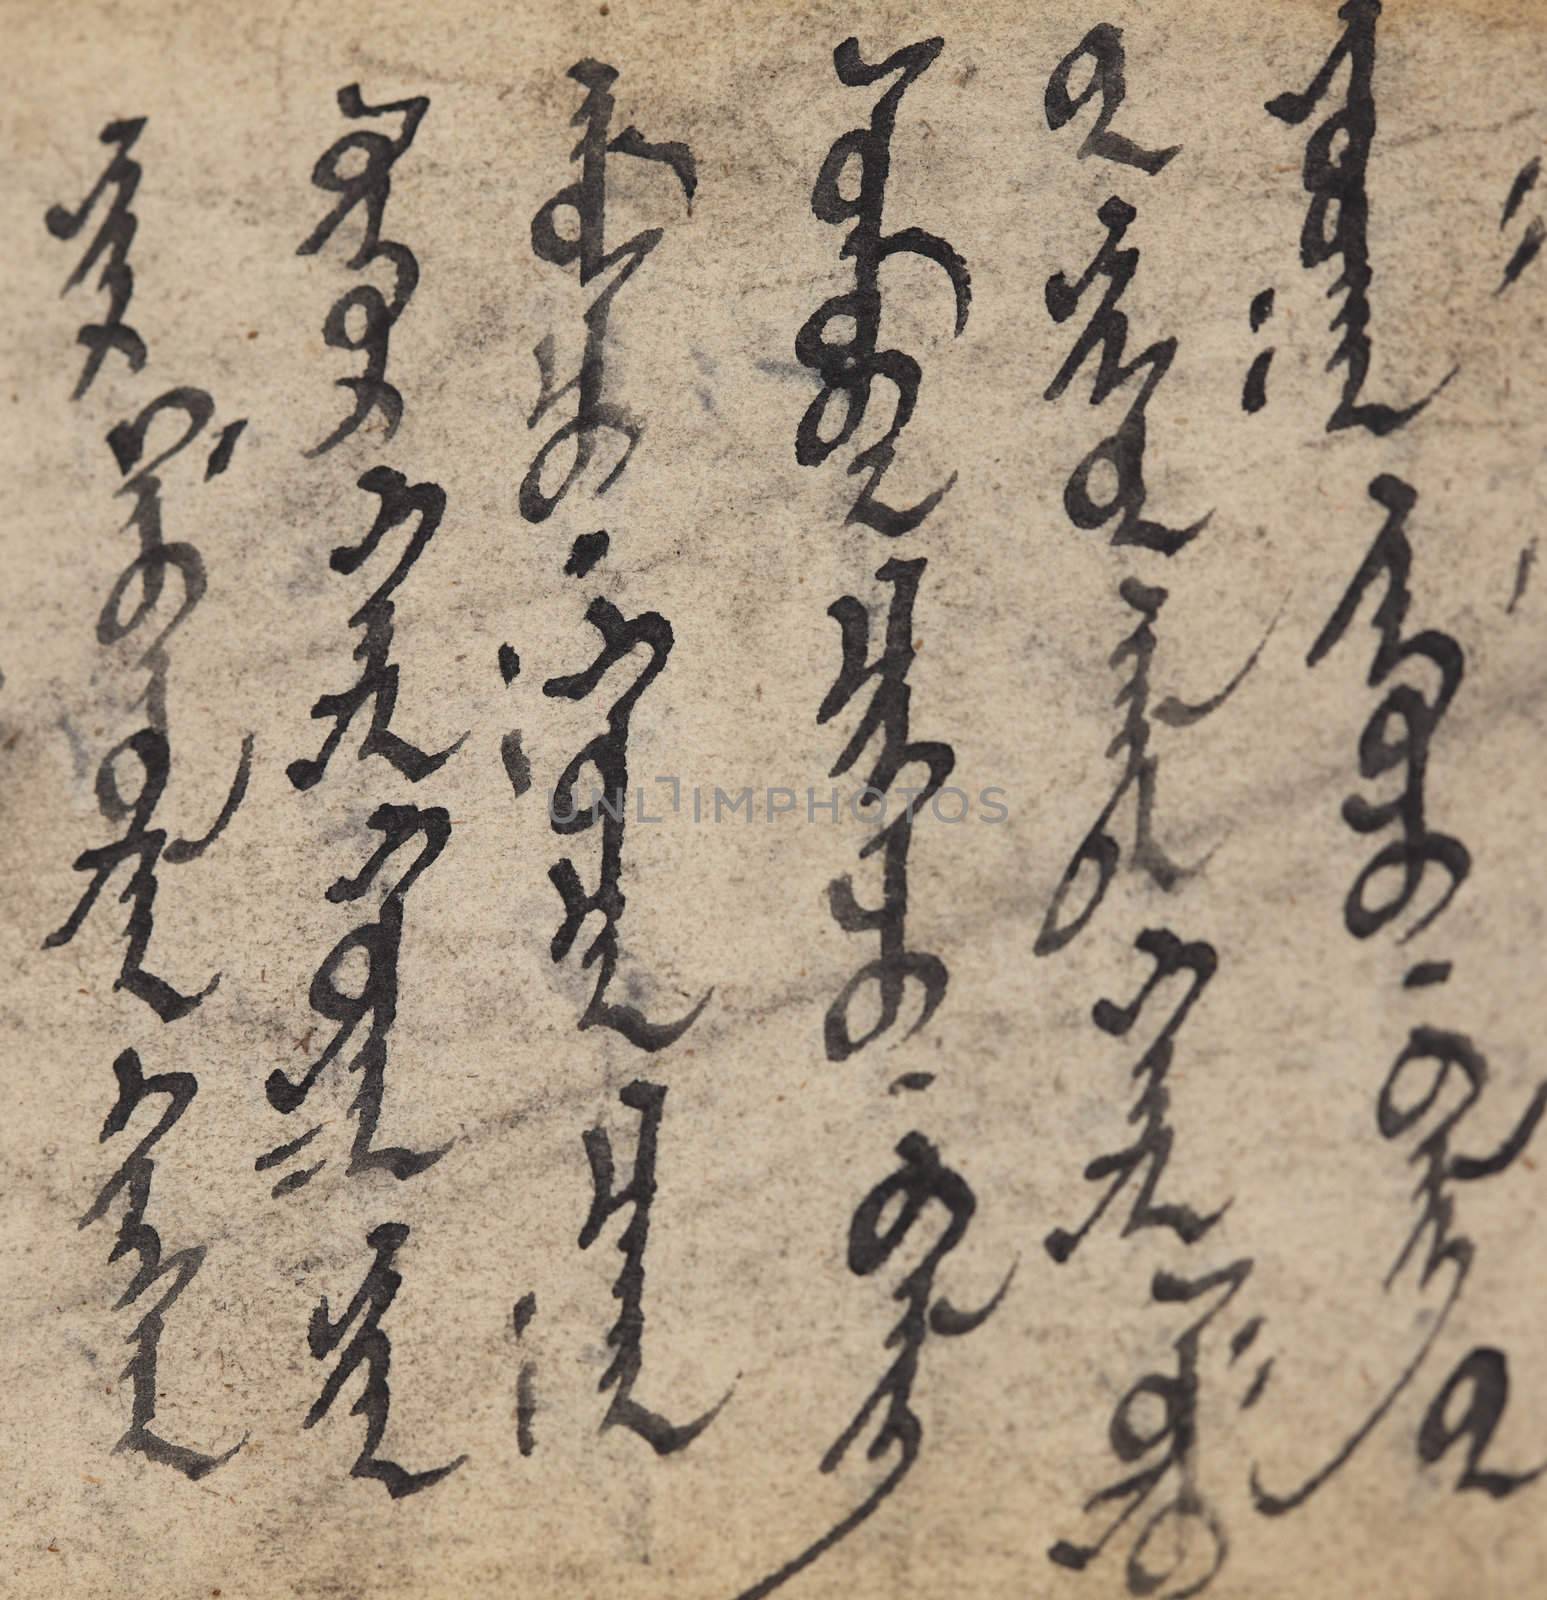 Mongolian script by lovleah